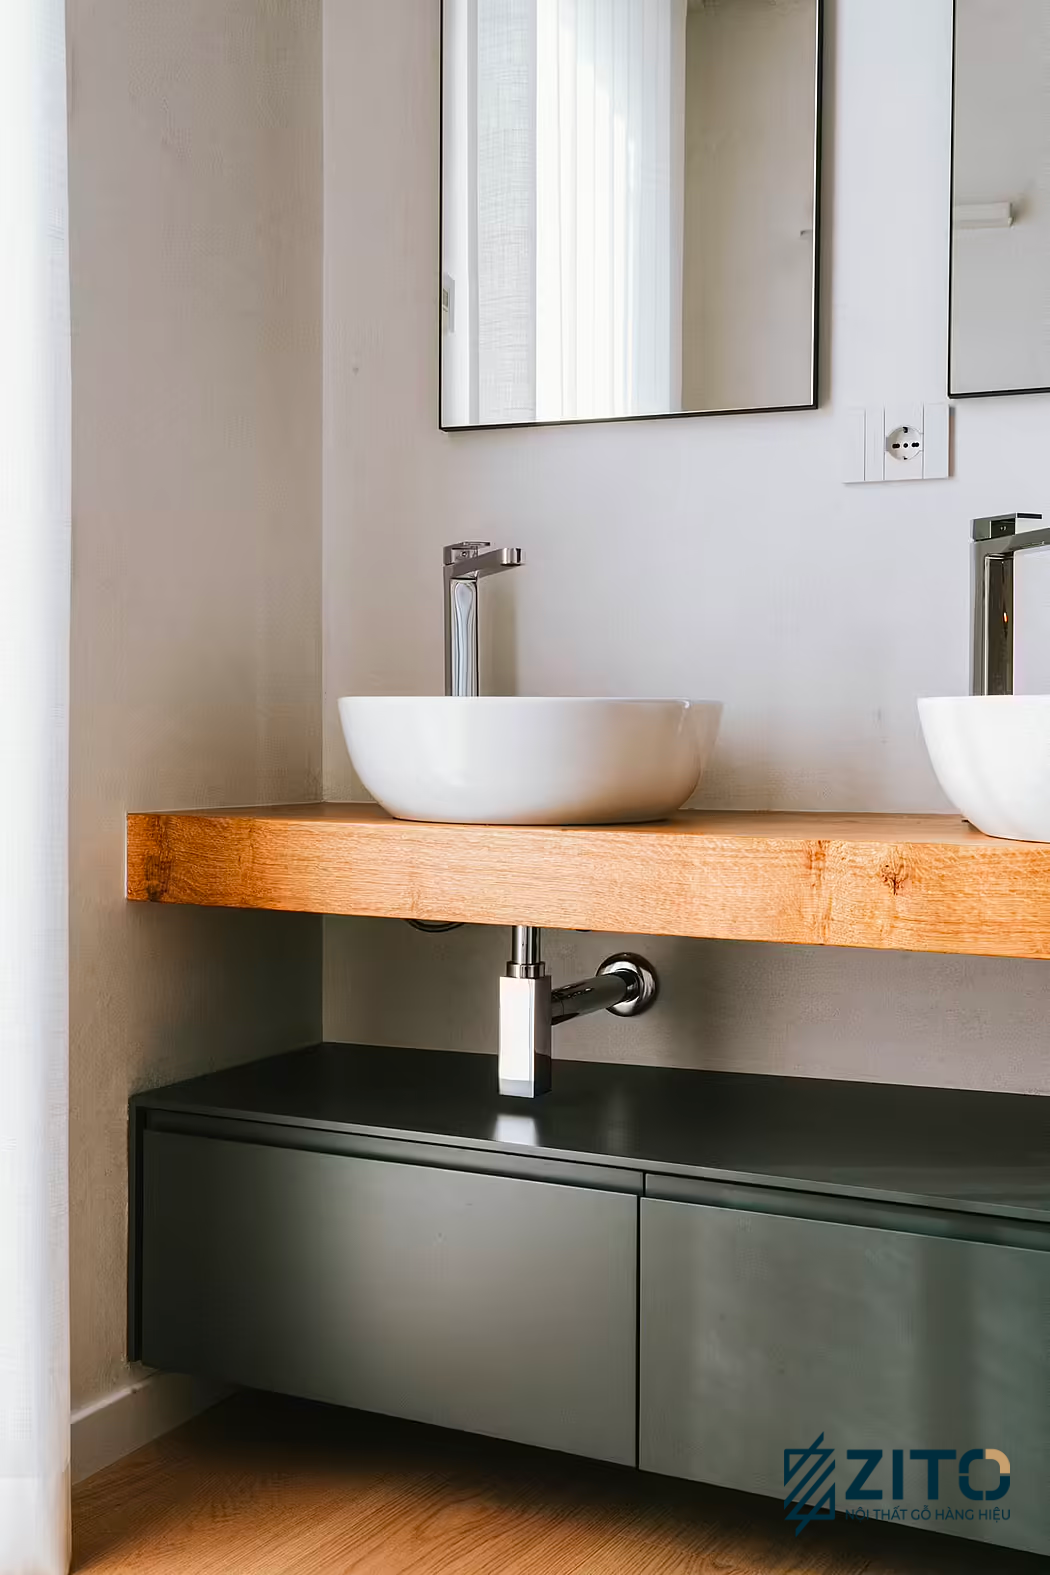 Thiết kế nội thất không gian phòng tắm sử dụng kính trong suốt hiện đại và tinh tế